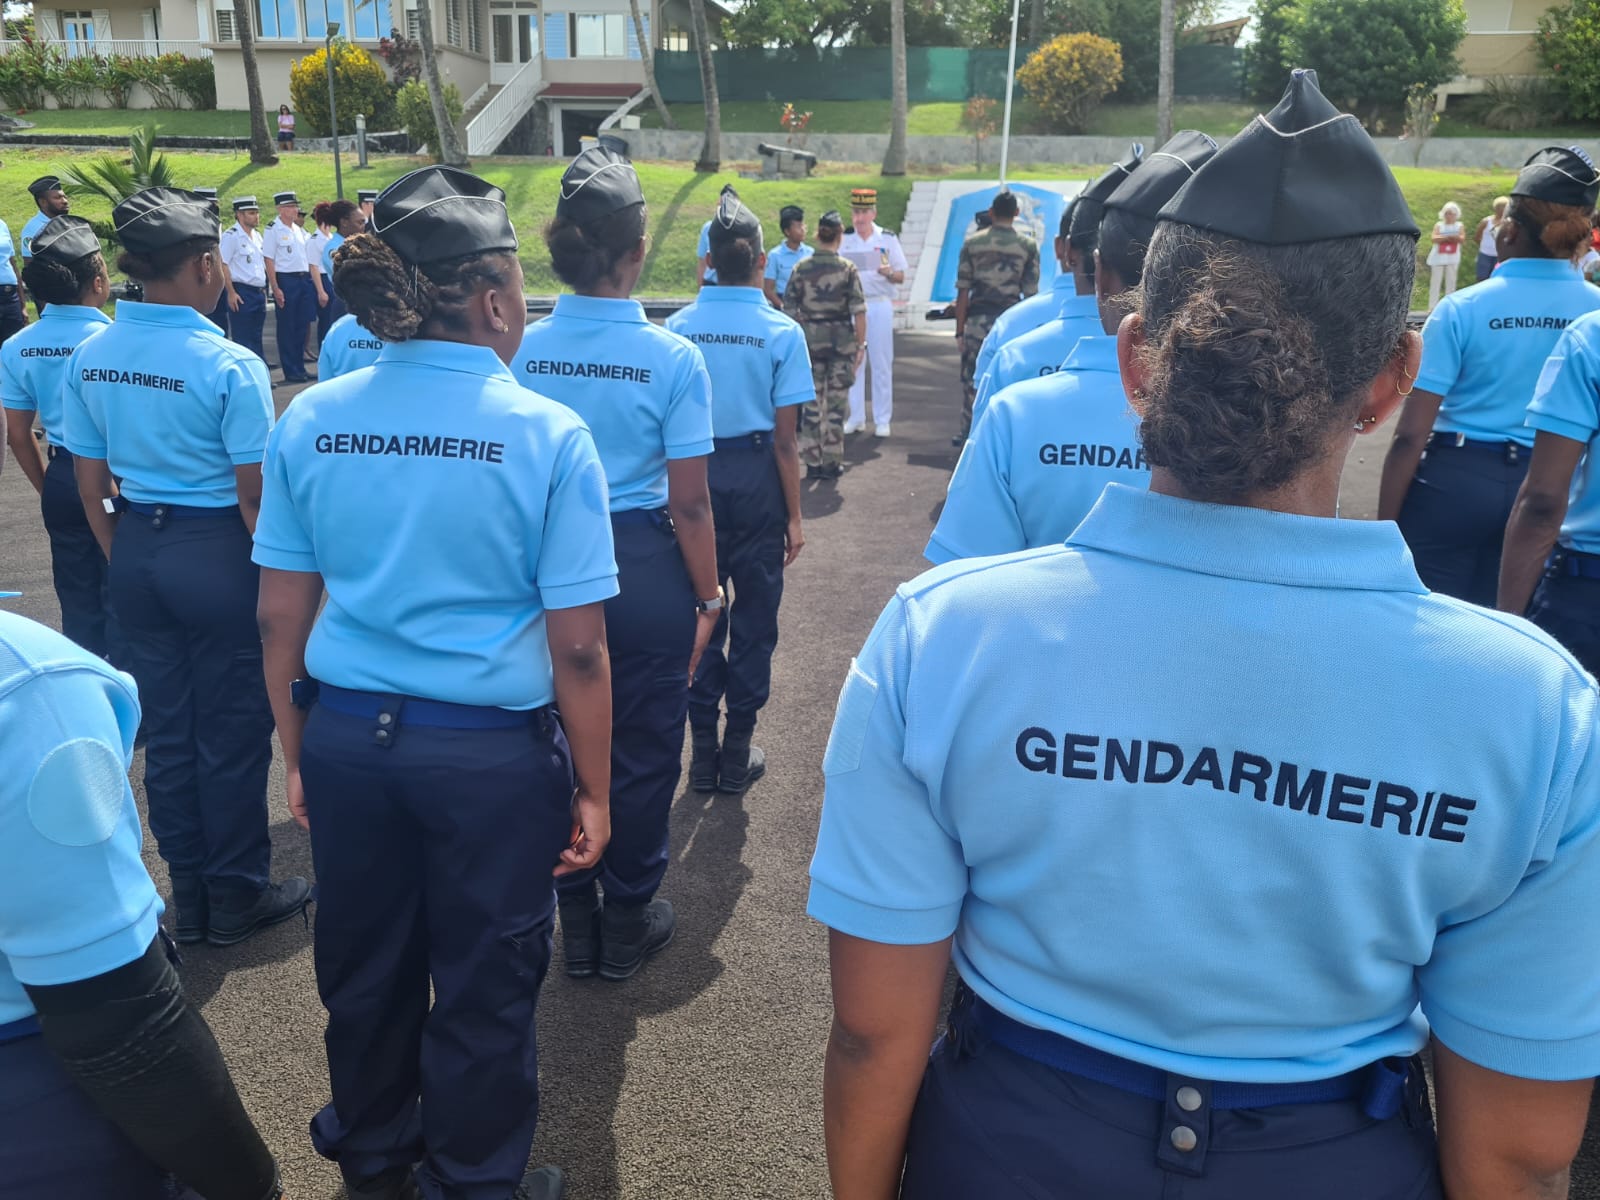     La gendarmerie de Martinique a accueilli une trentaine de nouveaux réservistes

